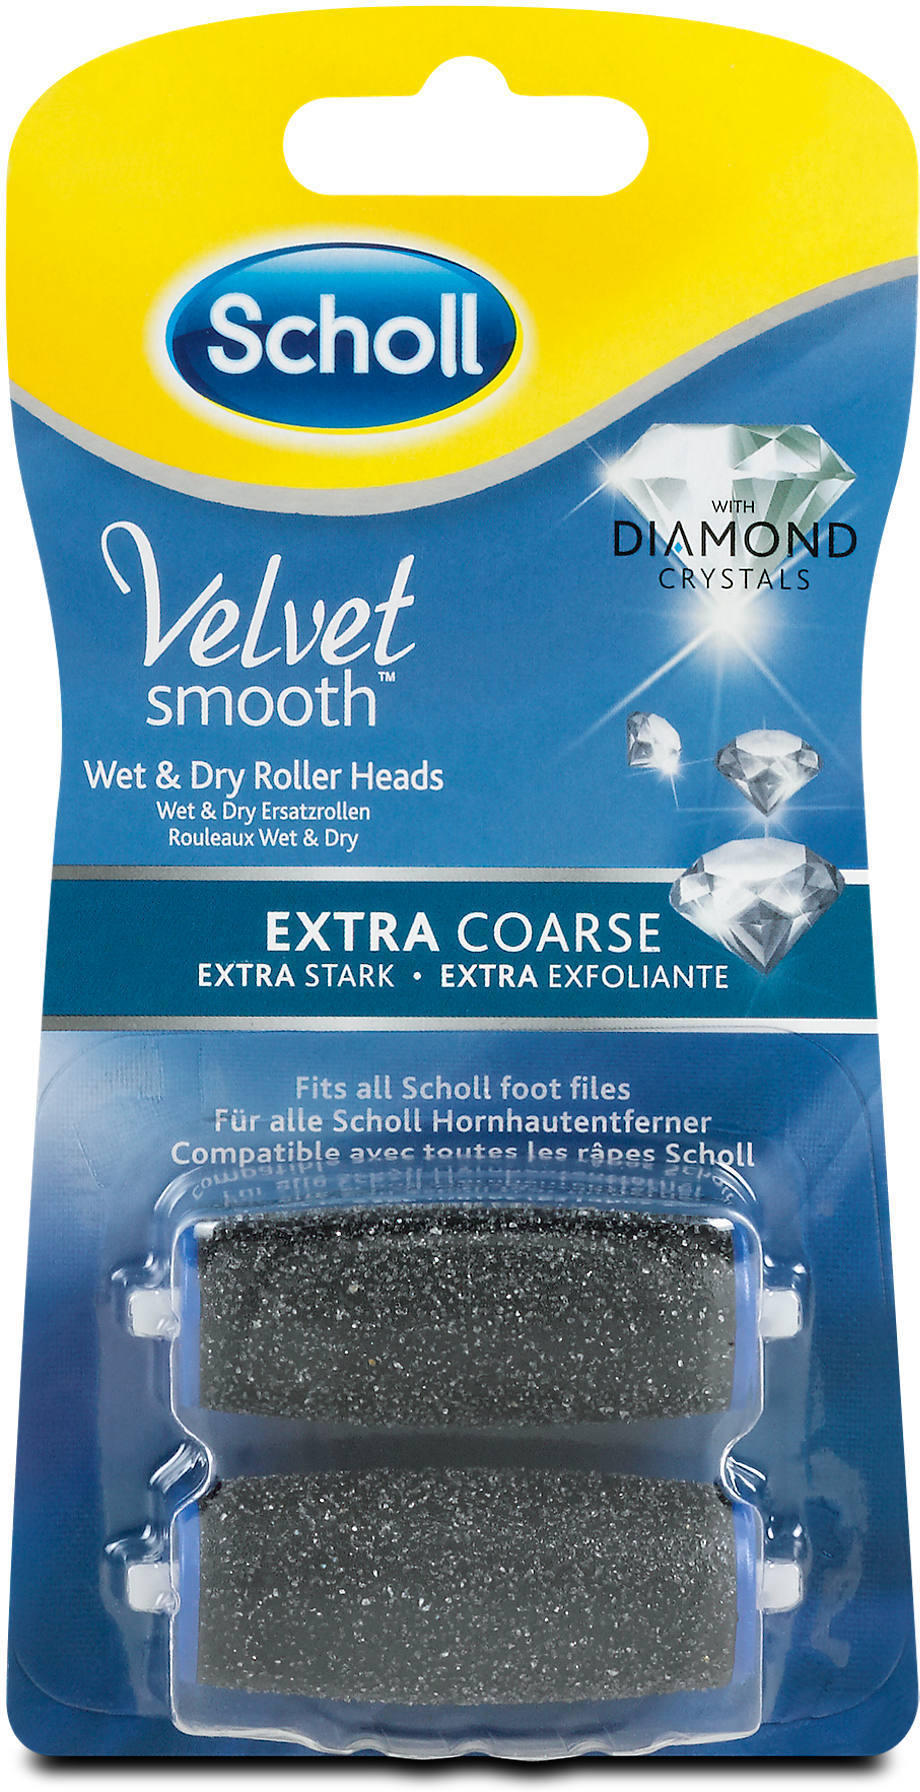 Trouwens apotheker winkel Scholl Velvet smooth Ersatzrollen Diamond extra Stark ✔️ Online von dm -  wogibtswas.at